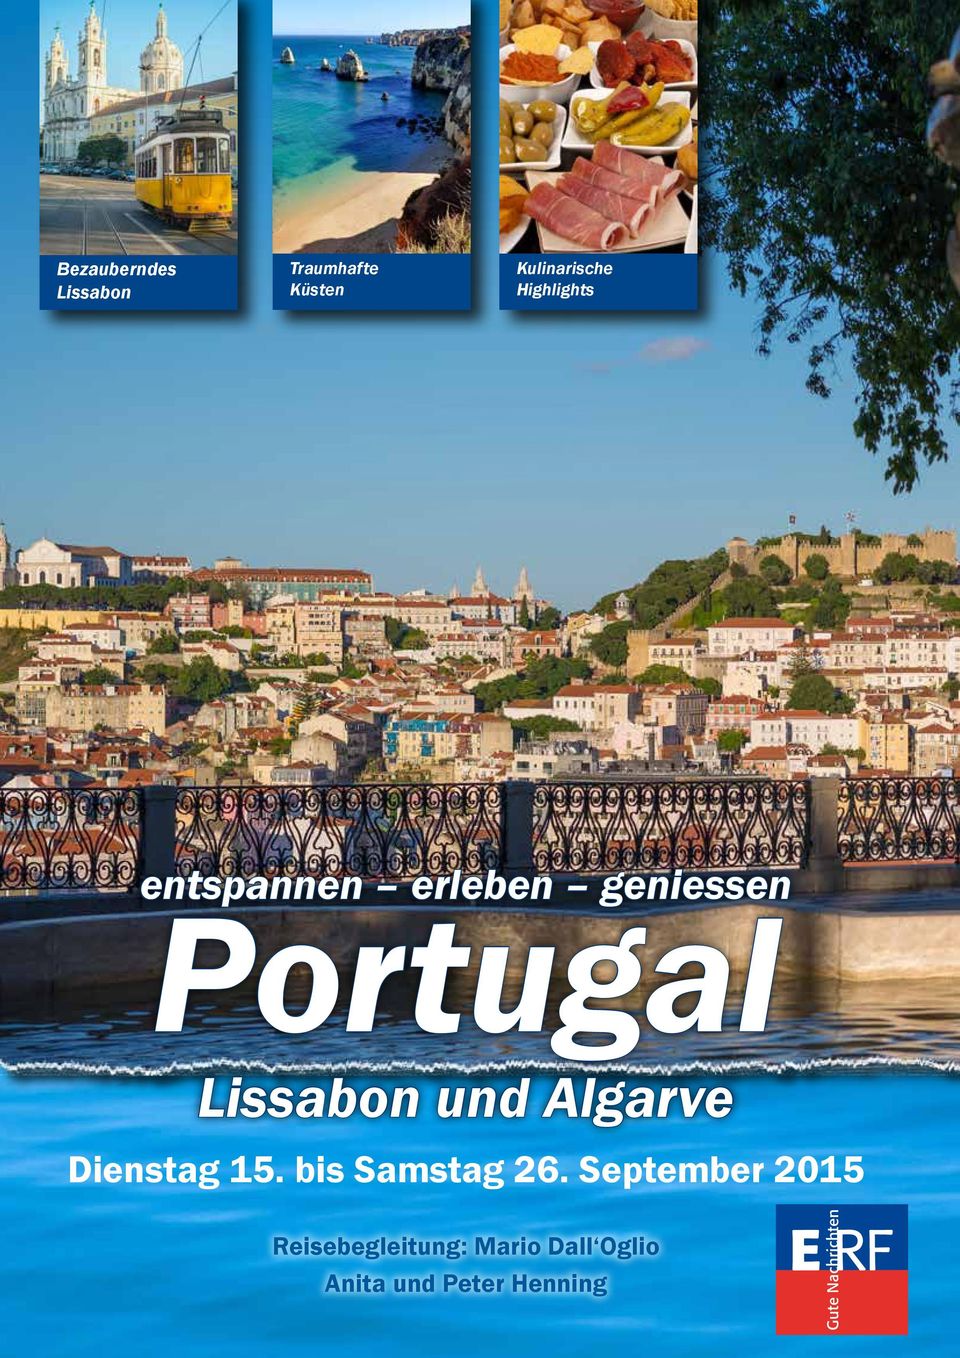 Lissabon und Algarve Dienstag 15. bis Samstag 26.